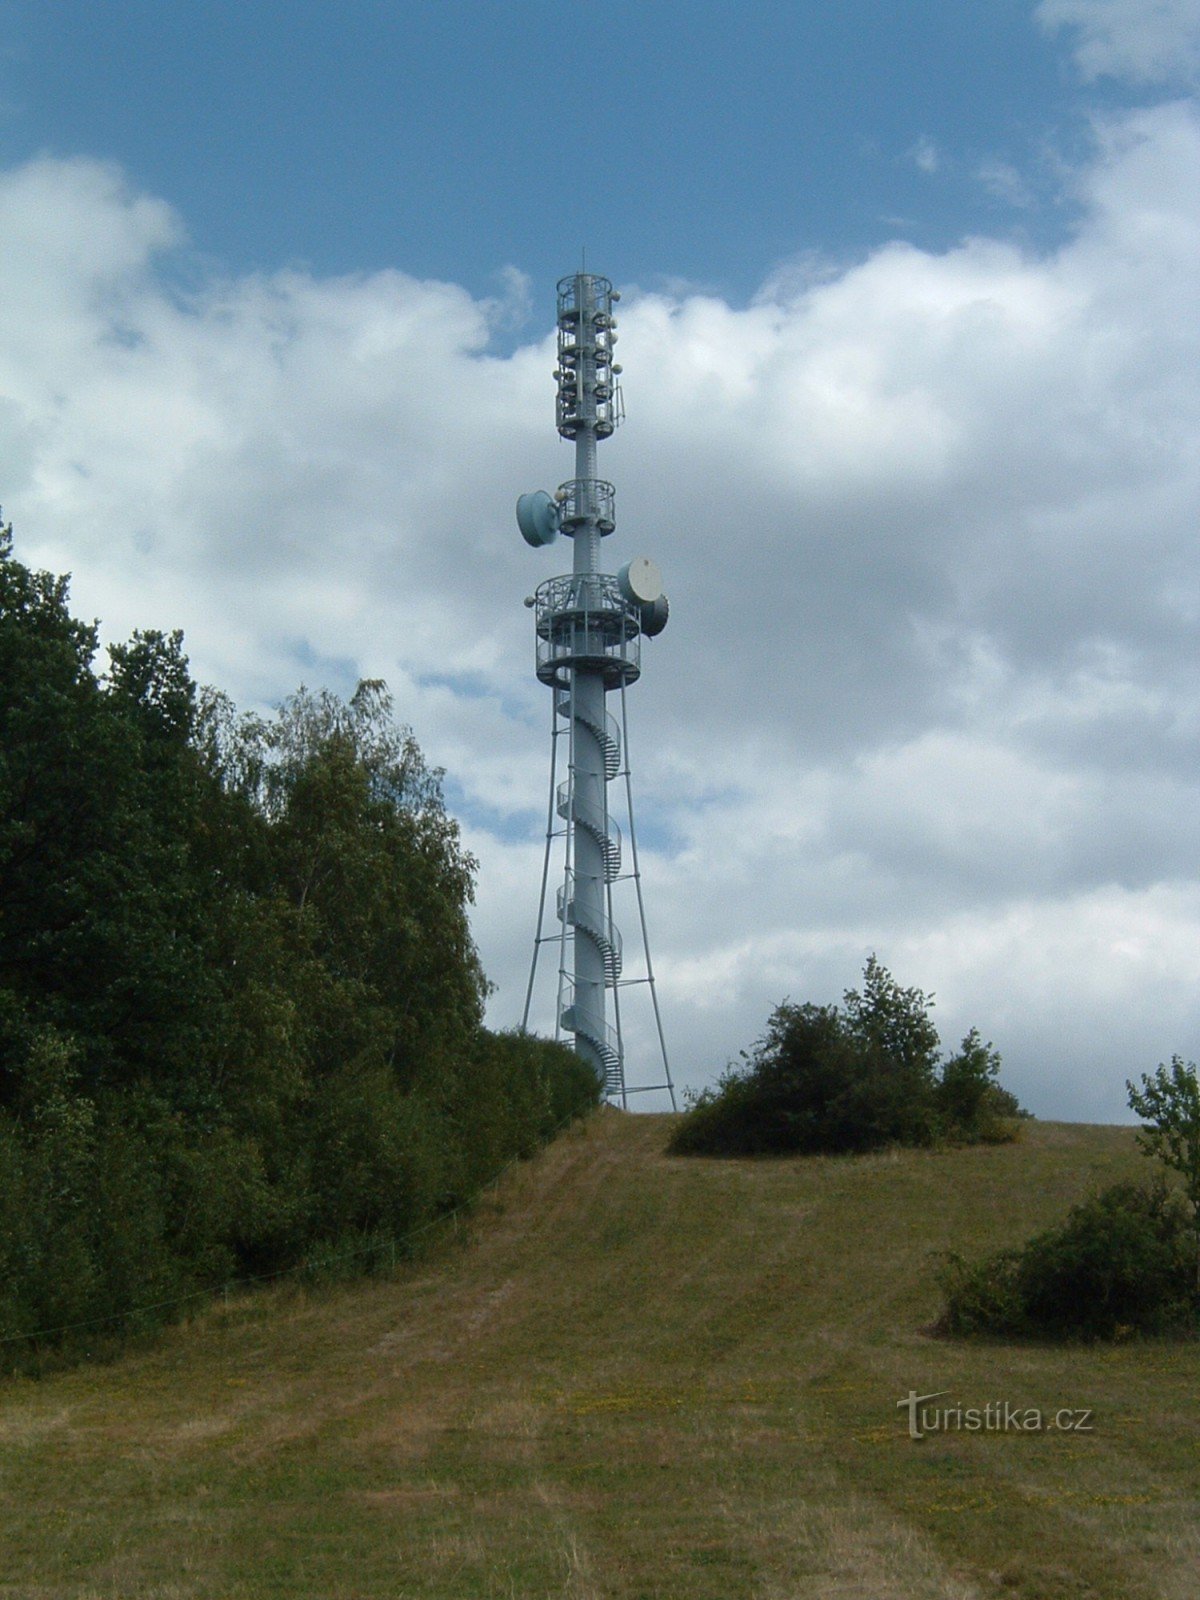 Torre de observação redonda